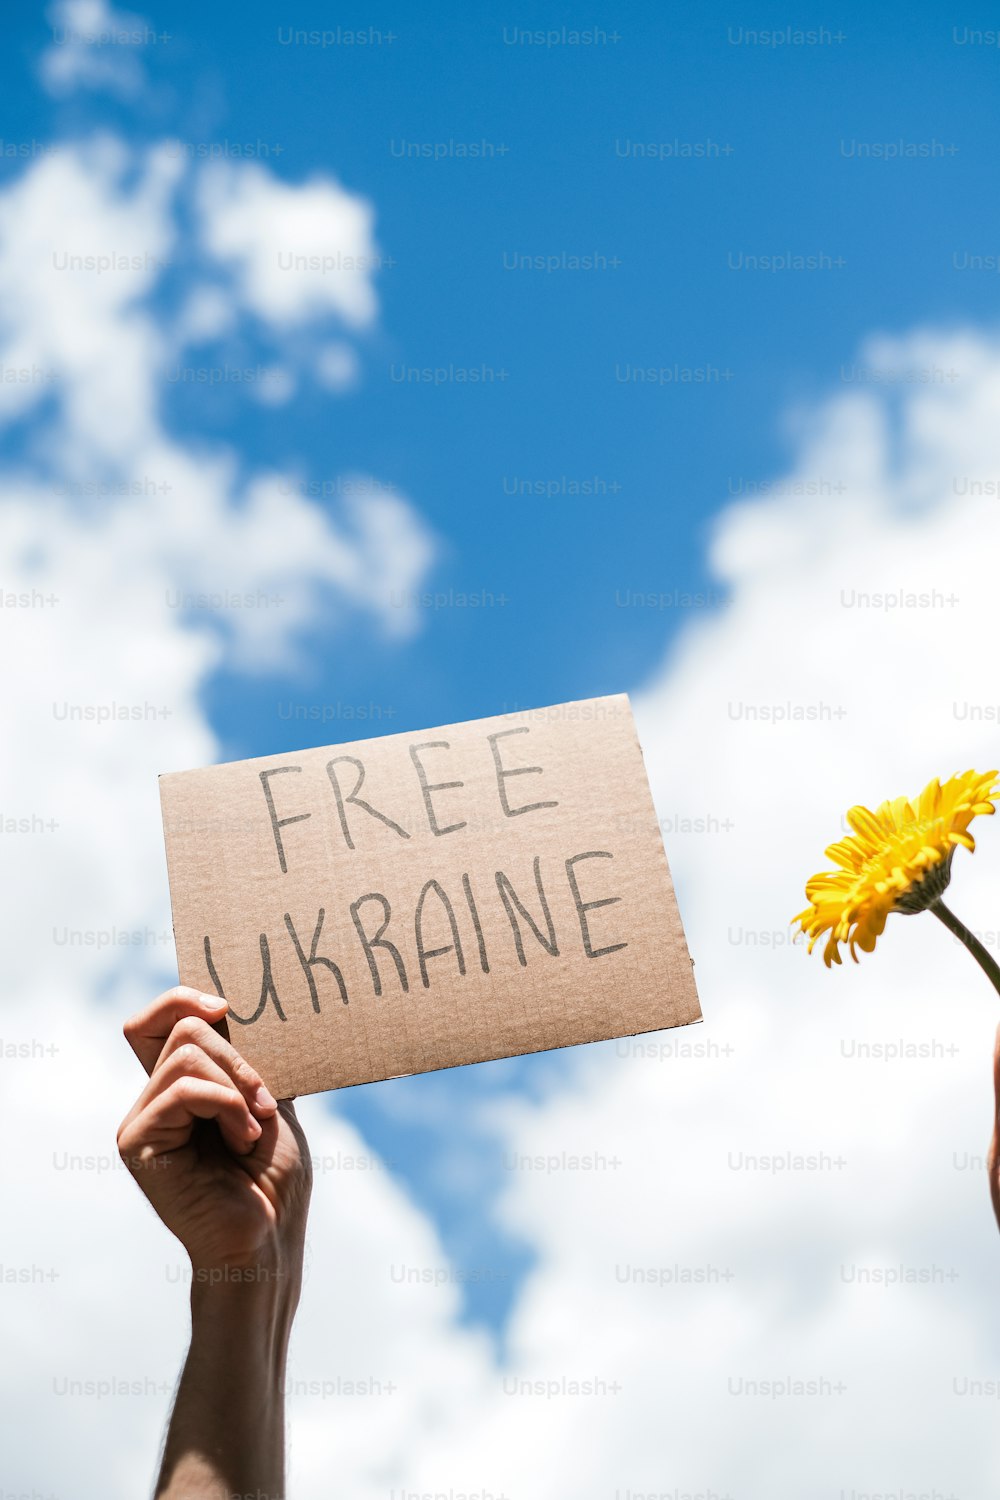 Eine Person, die ein Schild mit der Aufschrift "Freie Ukraine" hält